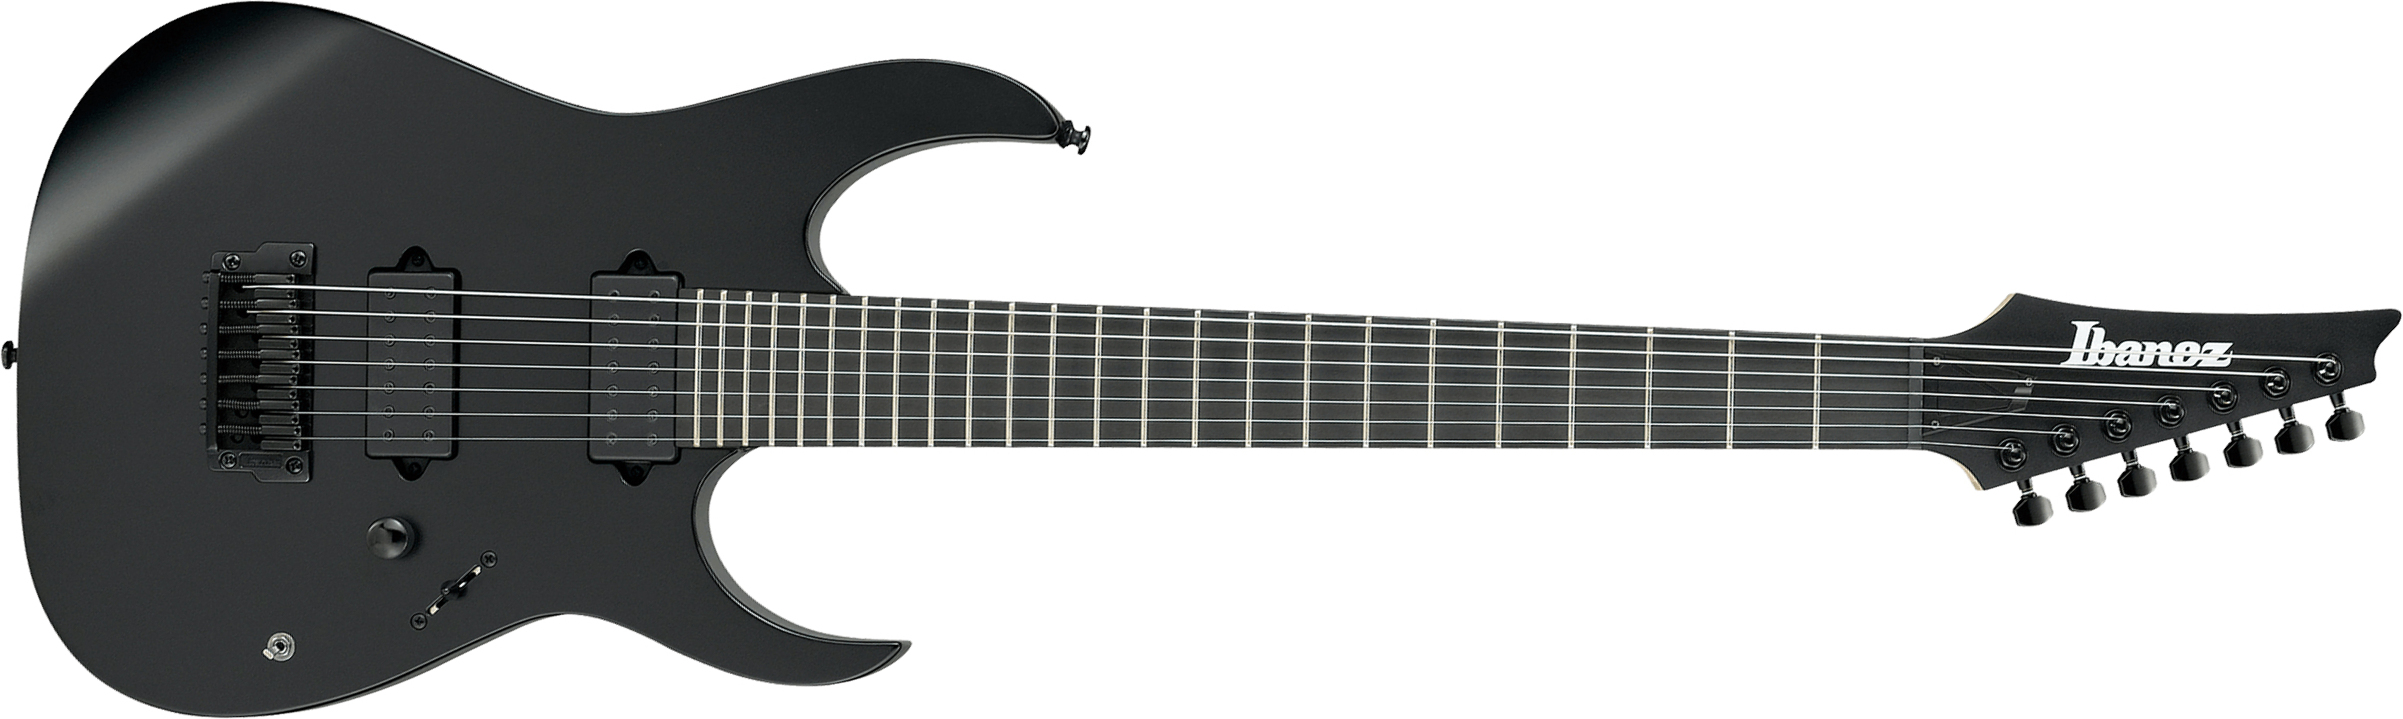 Ibanez Rgixl7 Bkf Iron Label Hh Dimarzio Ht Eb - Black Flat - Guitare Électrique 7 Cordes - Main picture